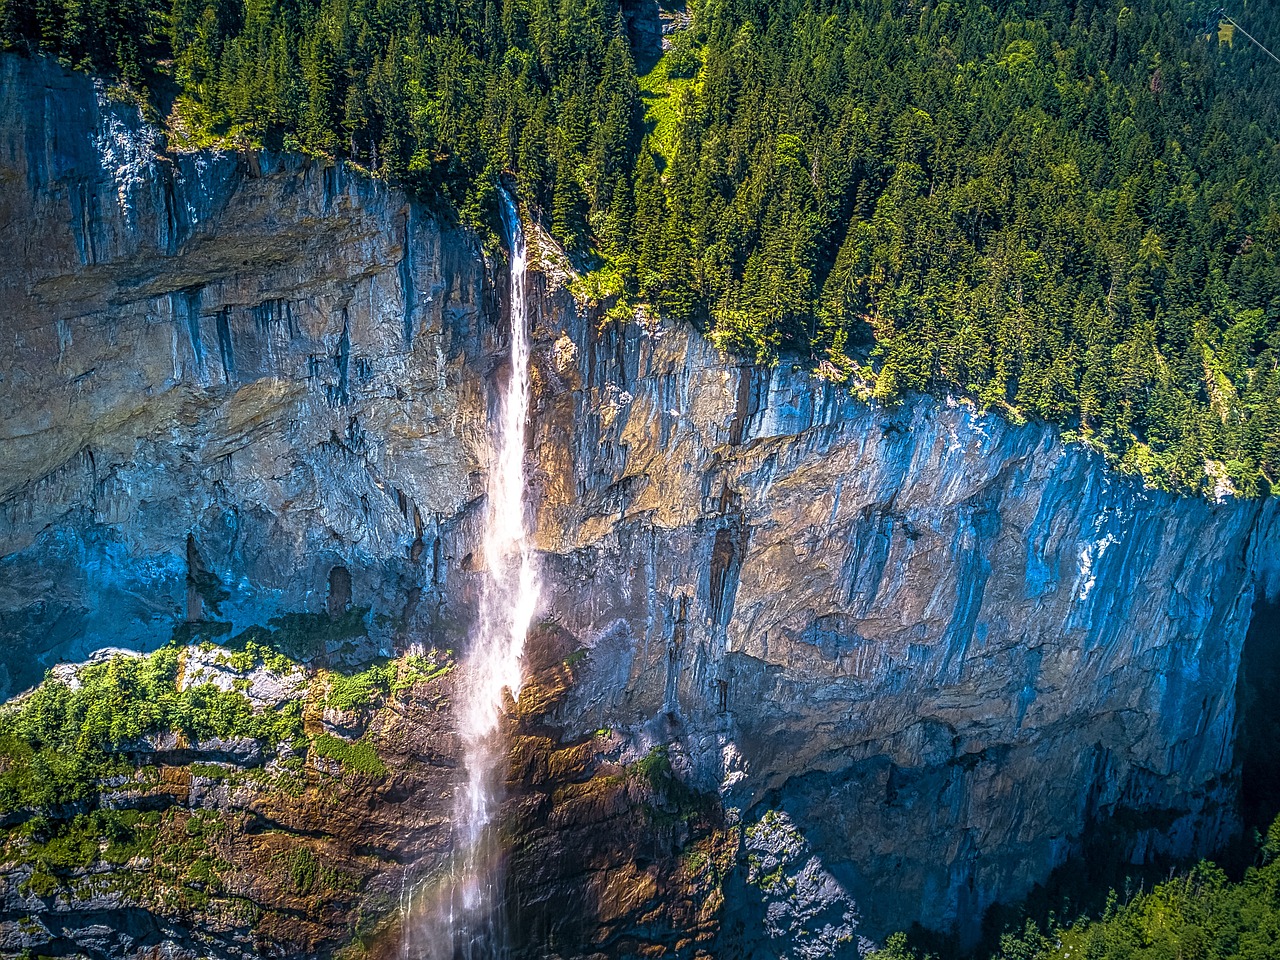 Lauterbrunnun's scenic Straubbach Falls.